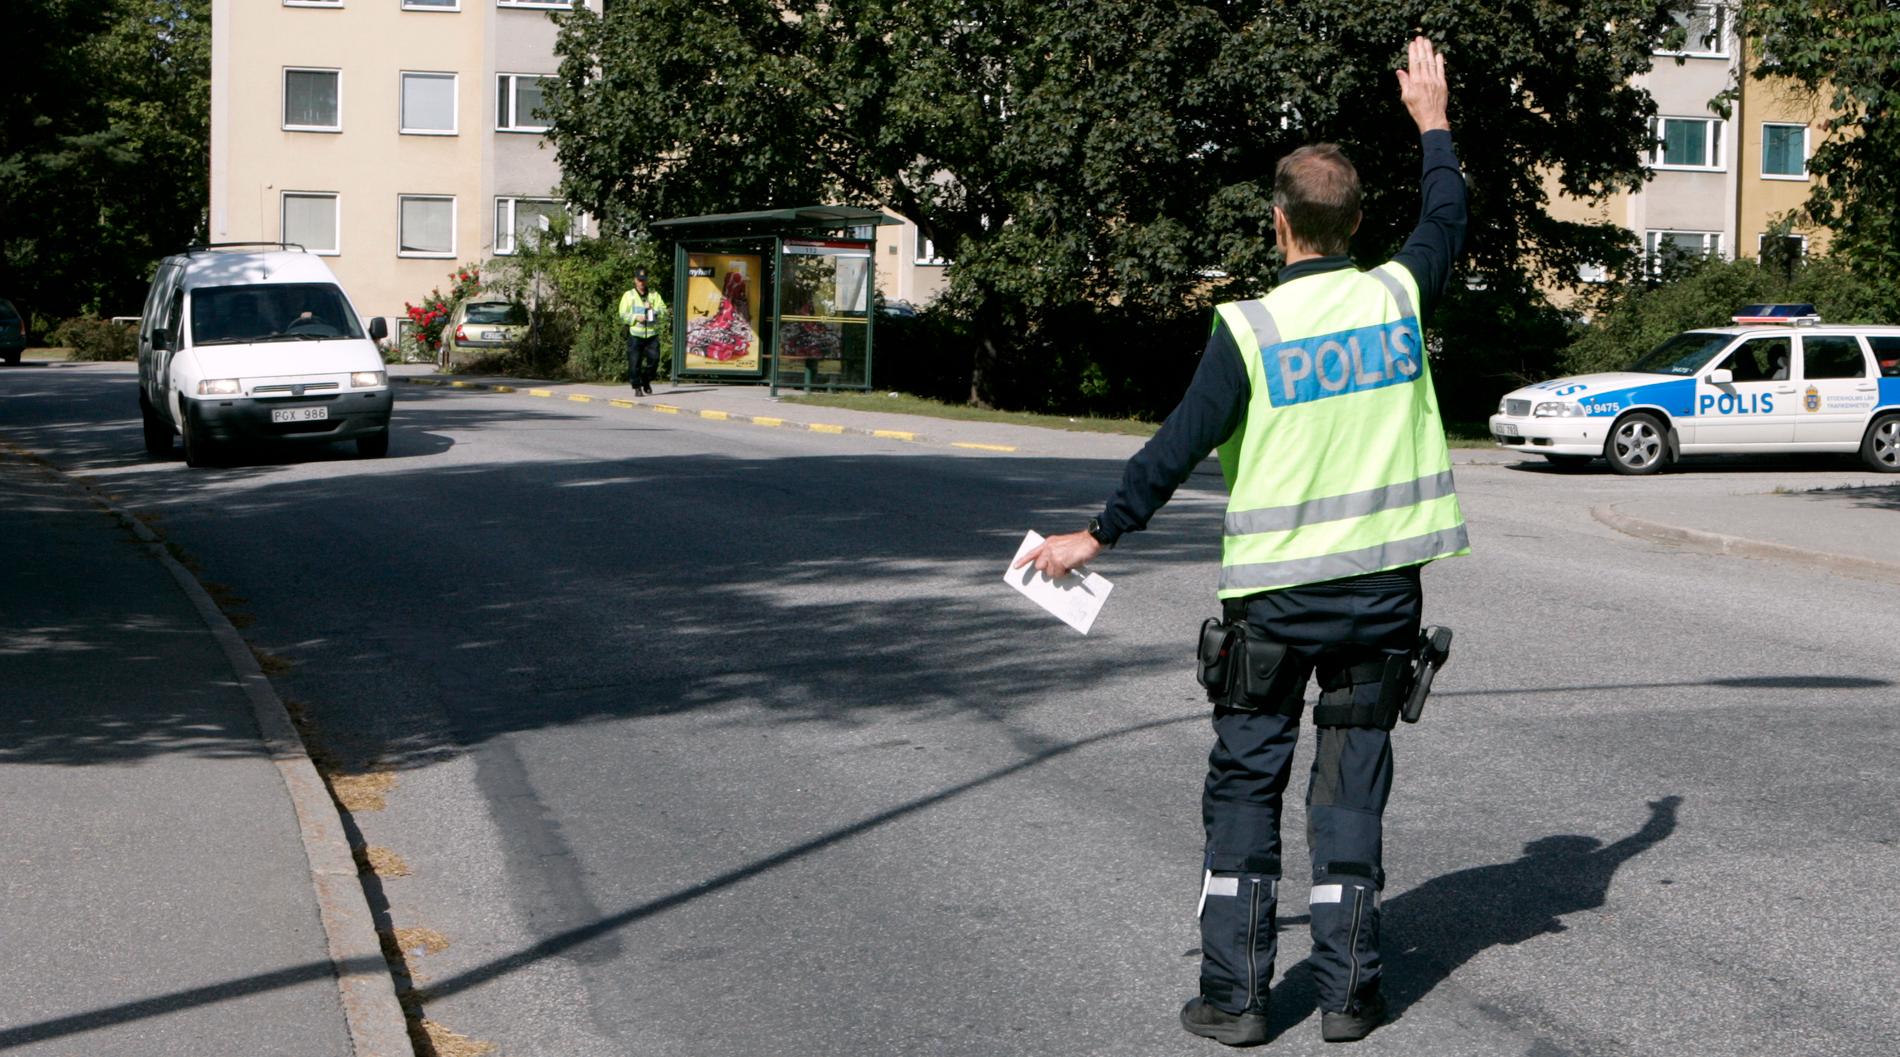 En man i Uppsala åtalas för att ha dirigerat trafiken utklädd till polis, skriver svt.